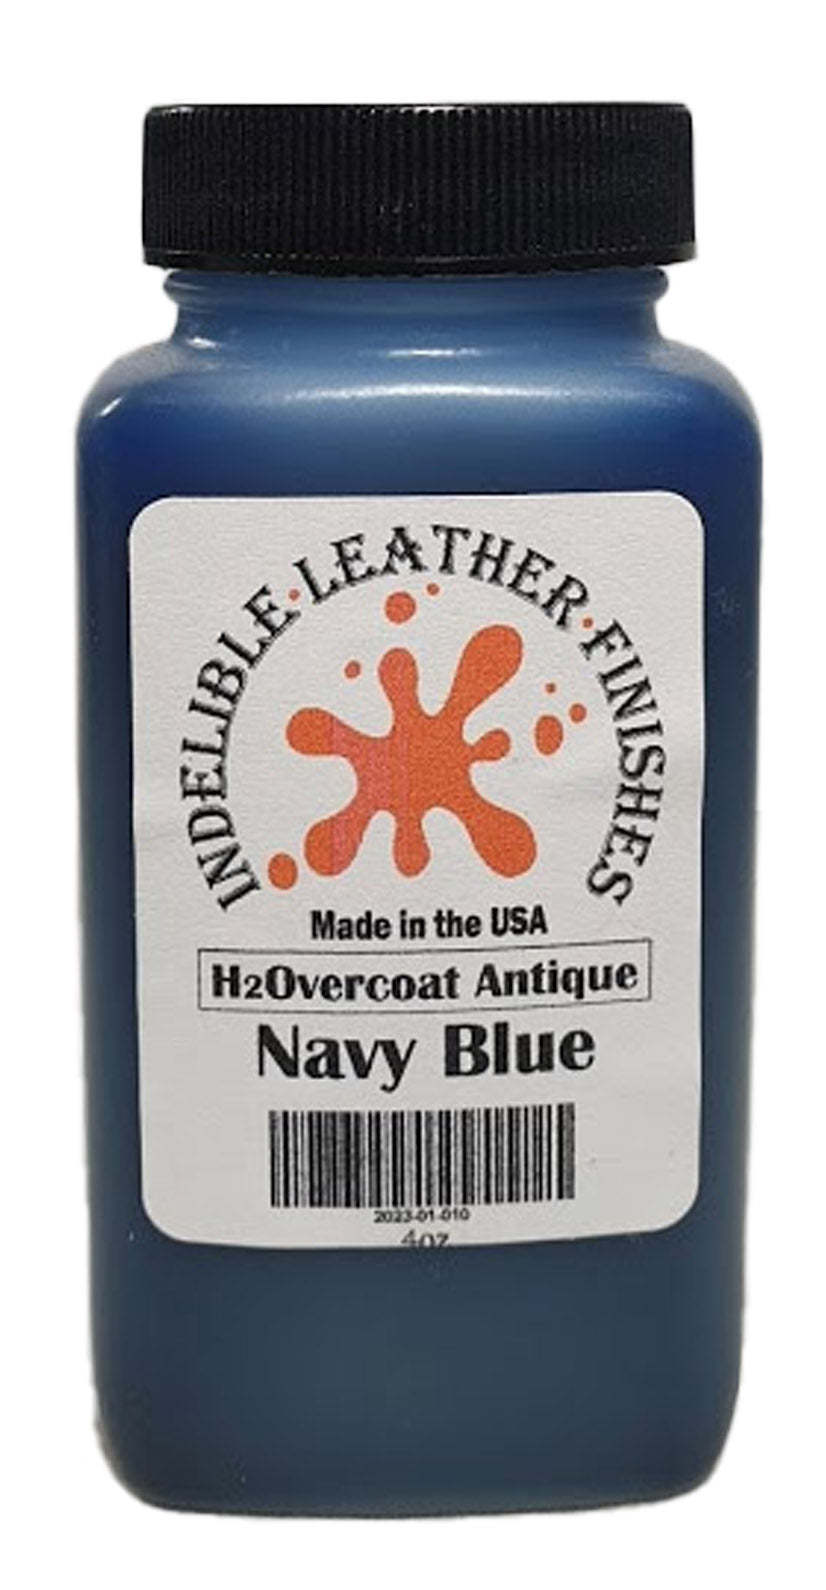 H2Overcoat Antique Navy Blue